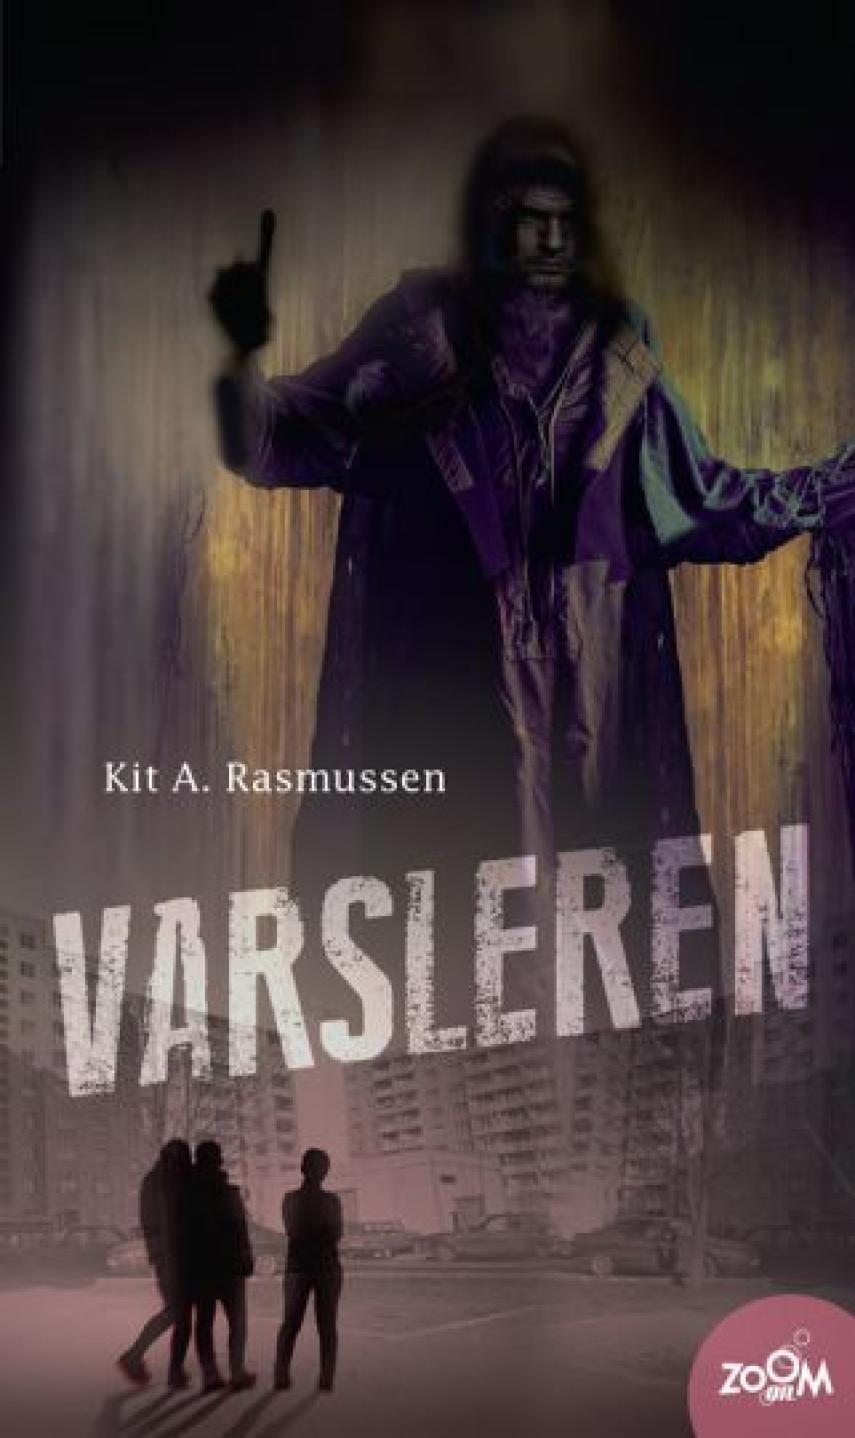 Kit A. Rasmussen: Varsleren